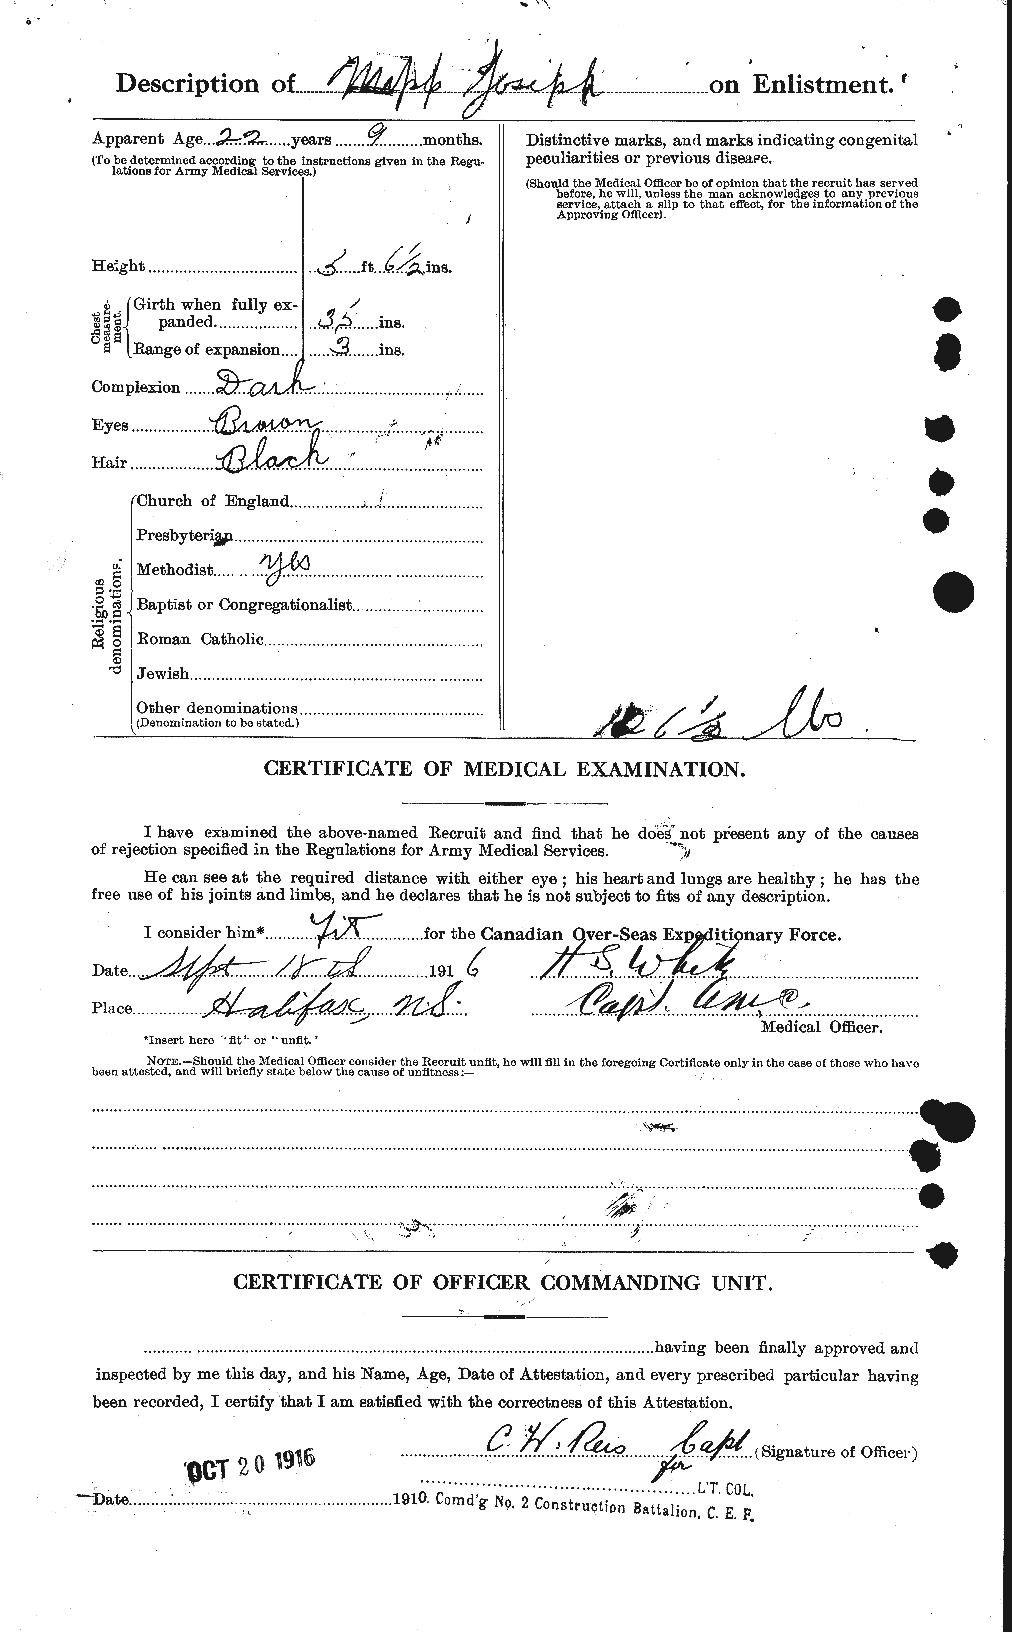 Dossiers du Personnel de la Première Guerre mondiale - CEC 478462b